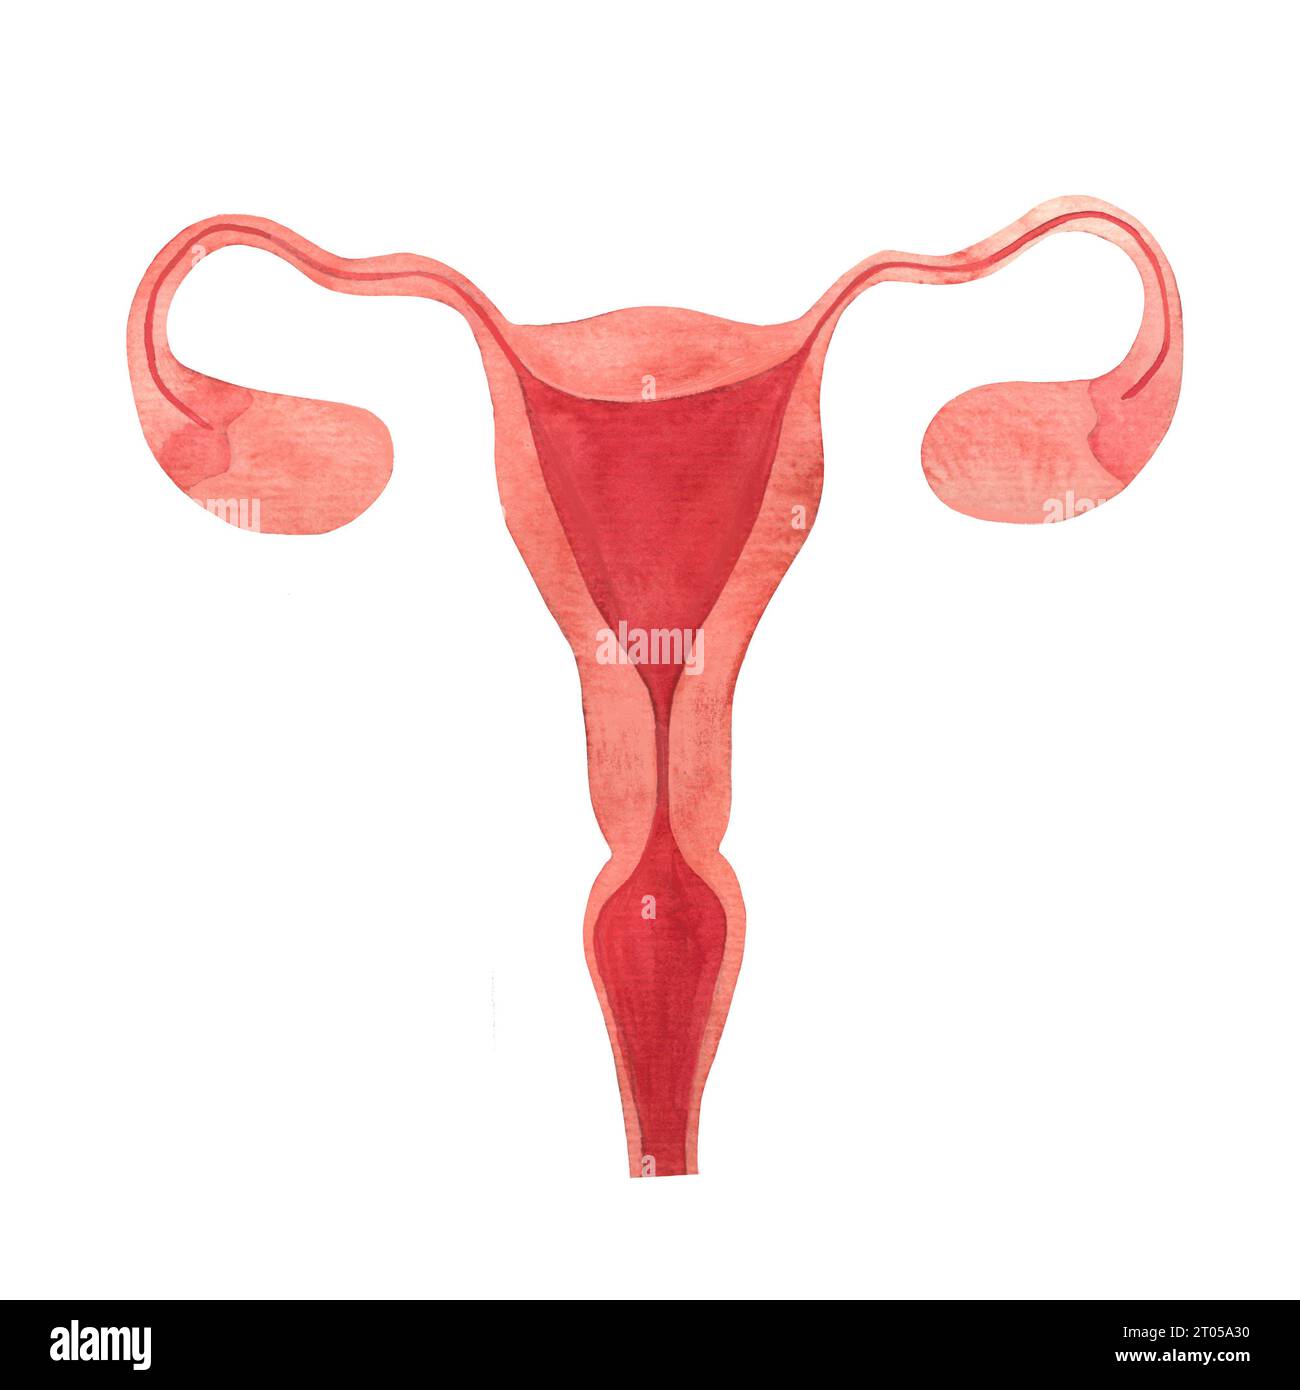 utero, organo riproduttivo femminile, ovaie, tubi di falloppio, endometrio, canale cervicale, cervice, acquerello illustrato a mano isolato Foto Stock